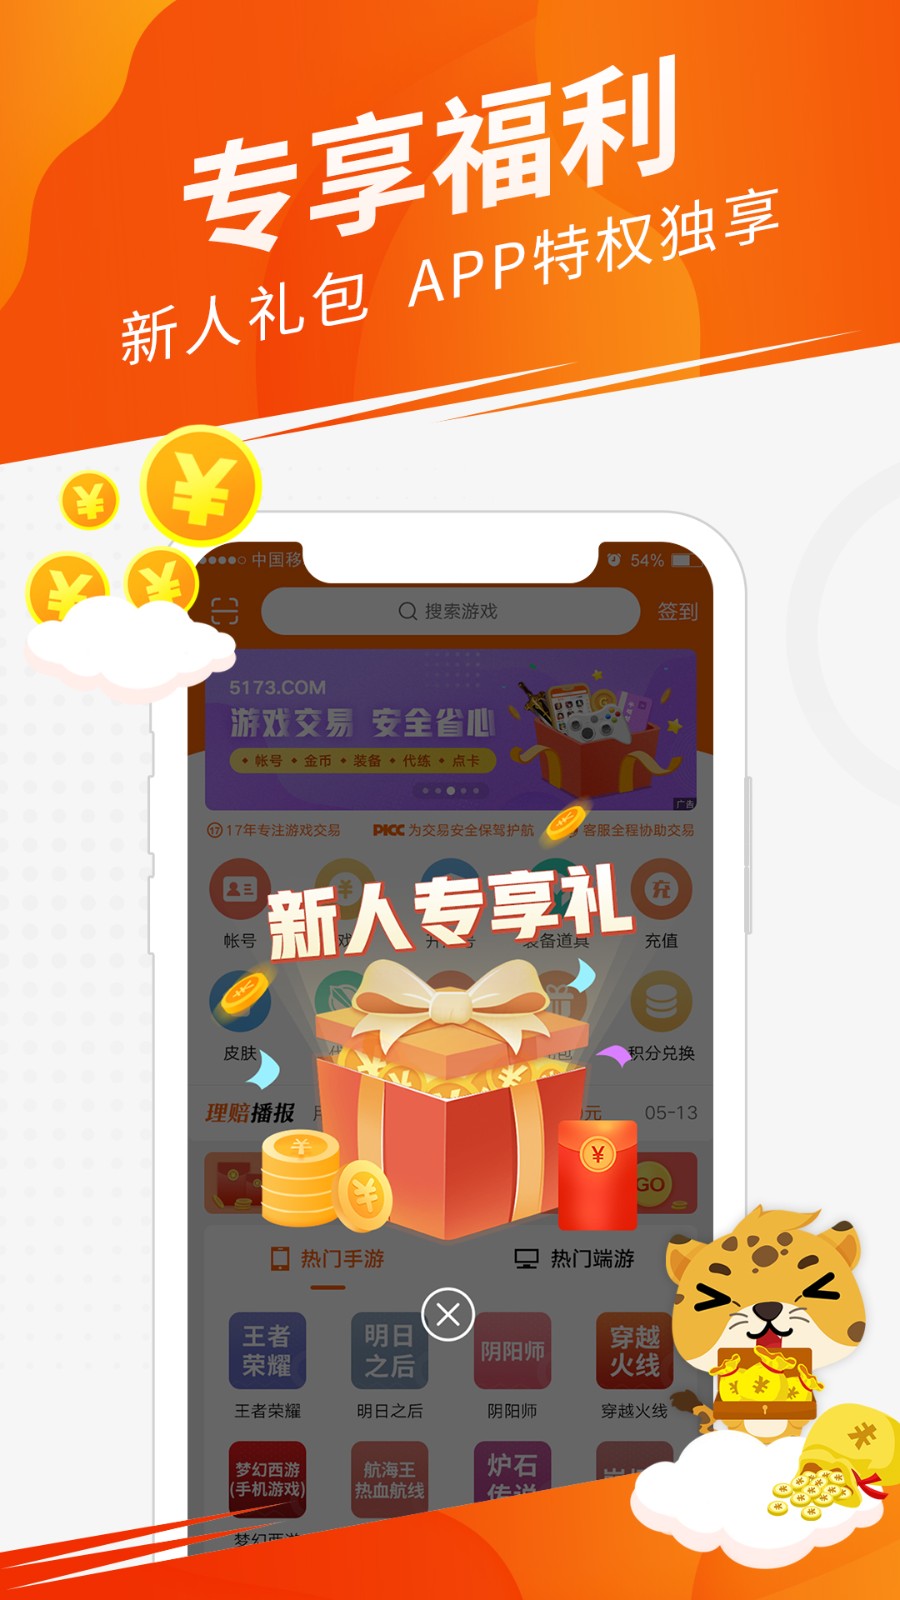 5173交易平台app